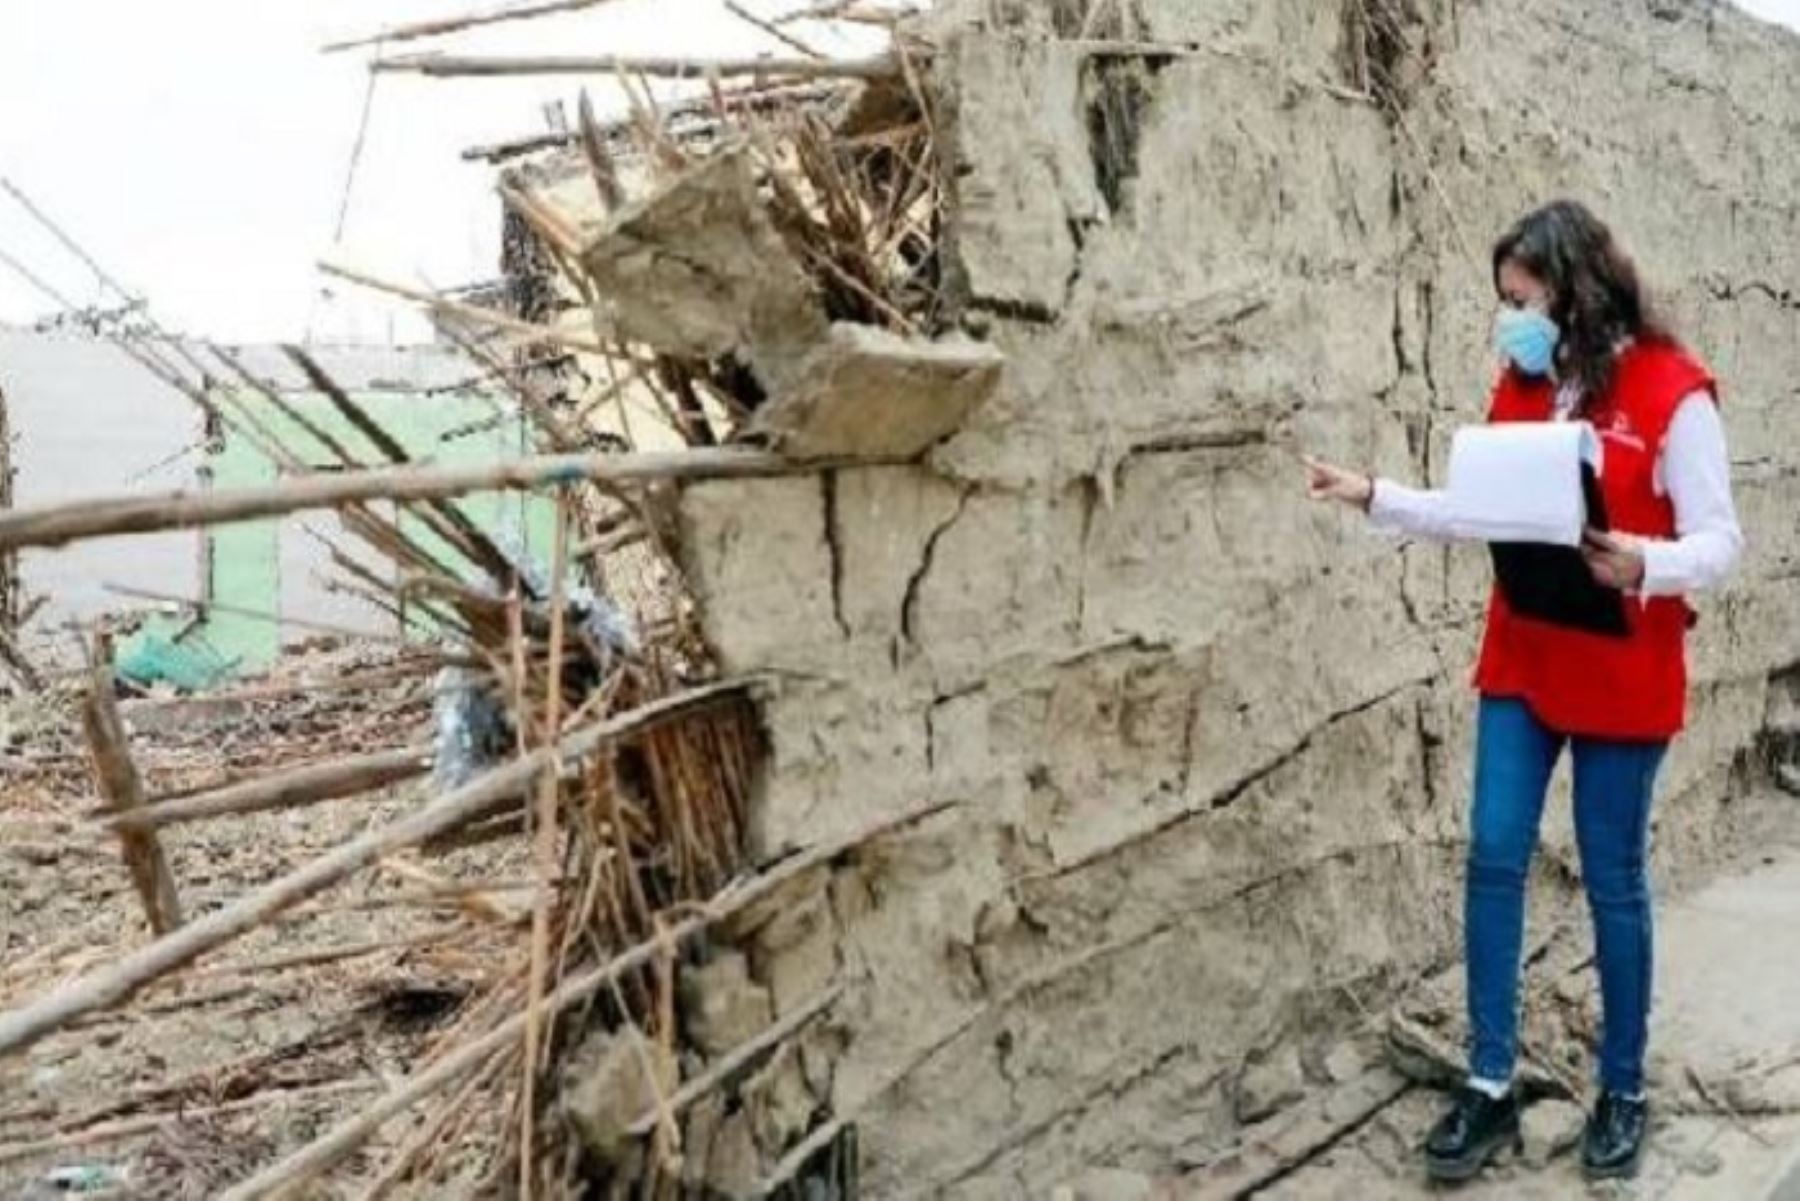 El Perú es un país expuesto a riesgos de desastres naturales, como lluvias, sismos, sequías, entre otros.